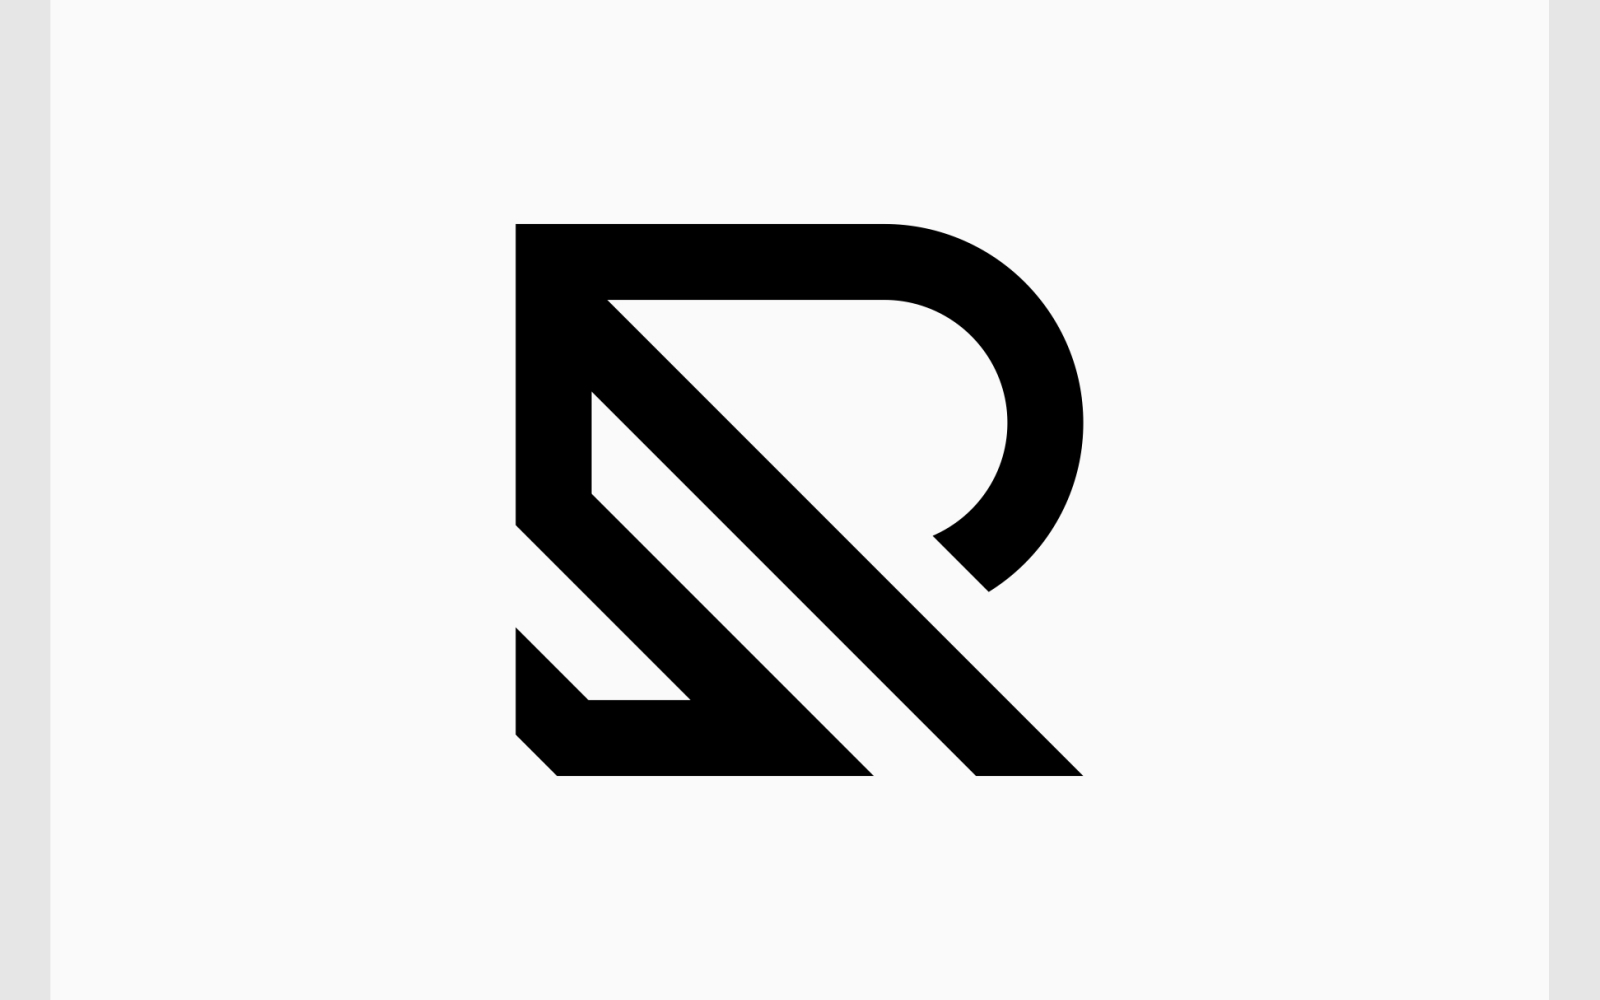 Letter RS SR Initials Minimalist Logo